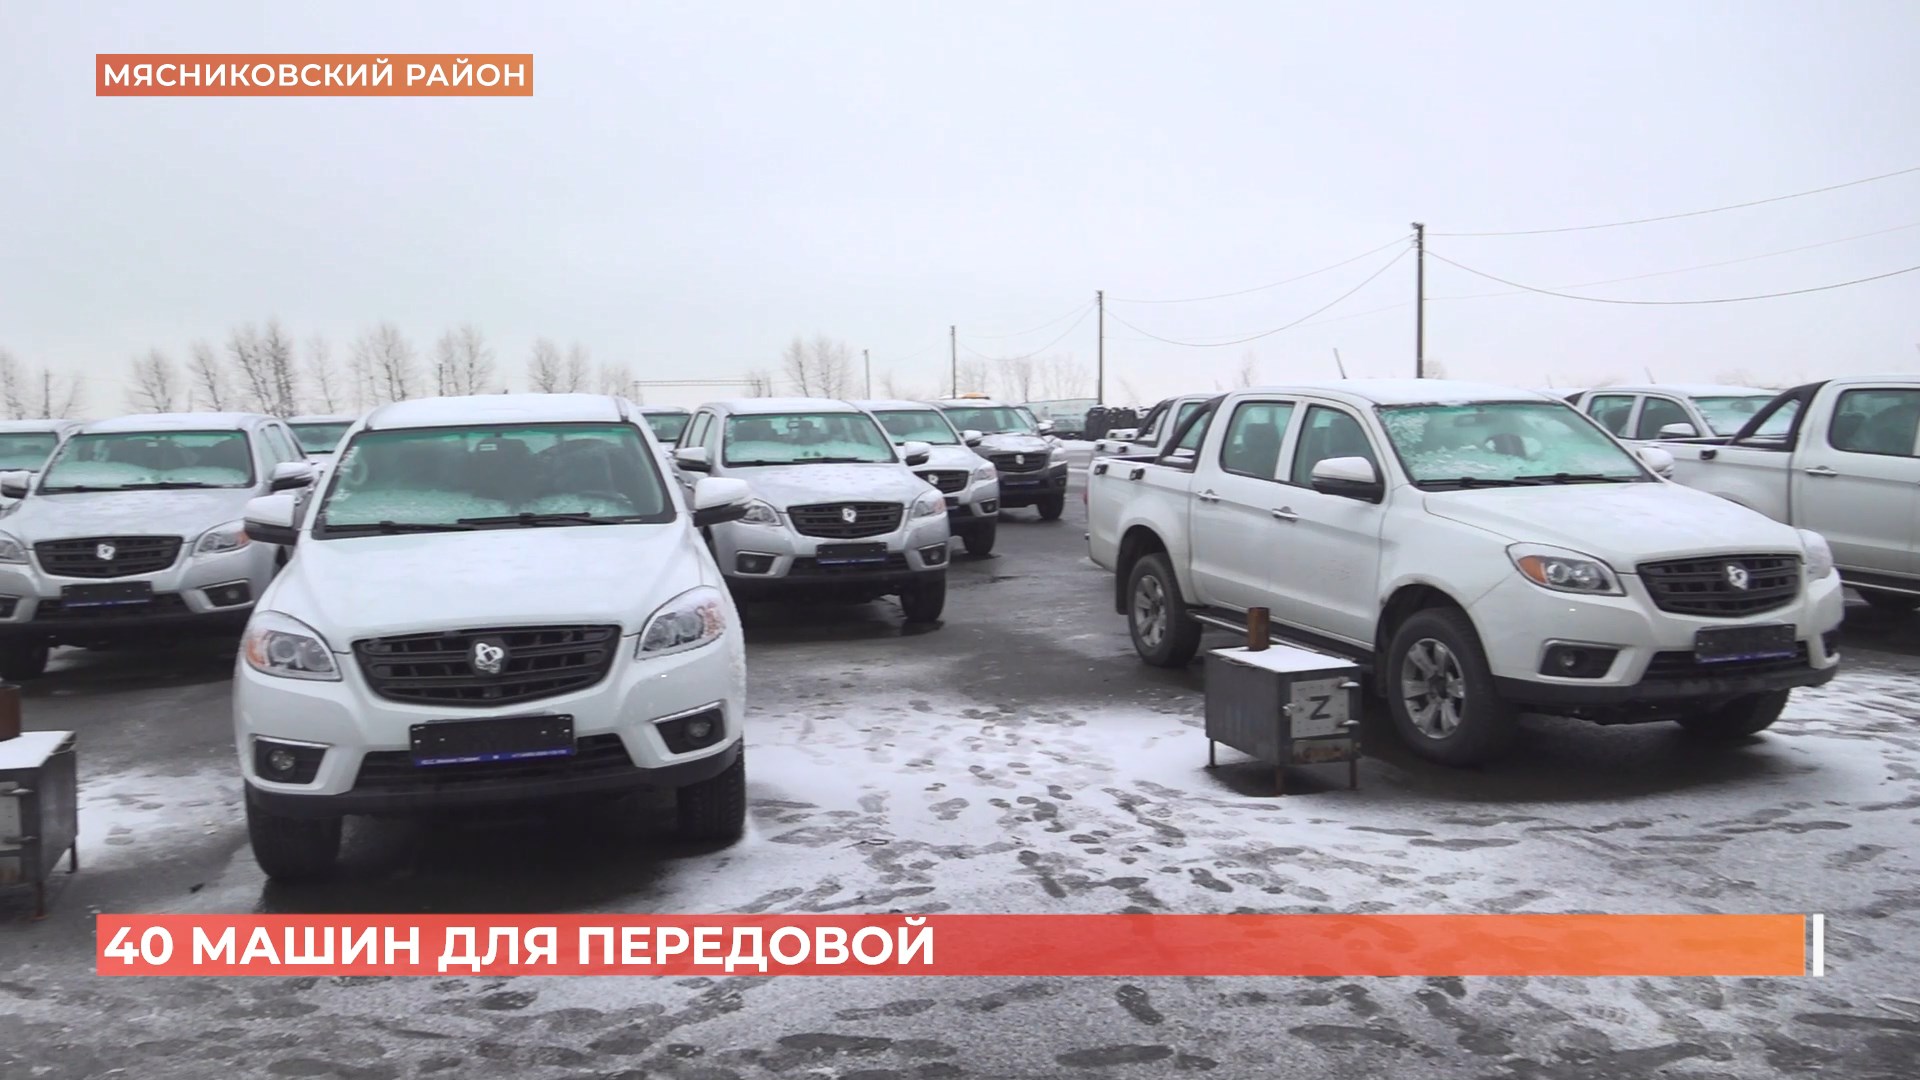 40 автомобилей, печки-буржуйки и сладкие подарки: «Единая Россия» передала на передовую партию гумпомощи